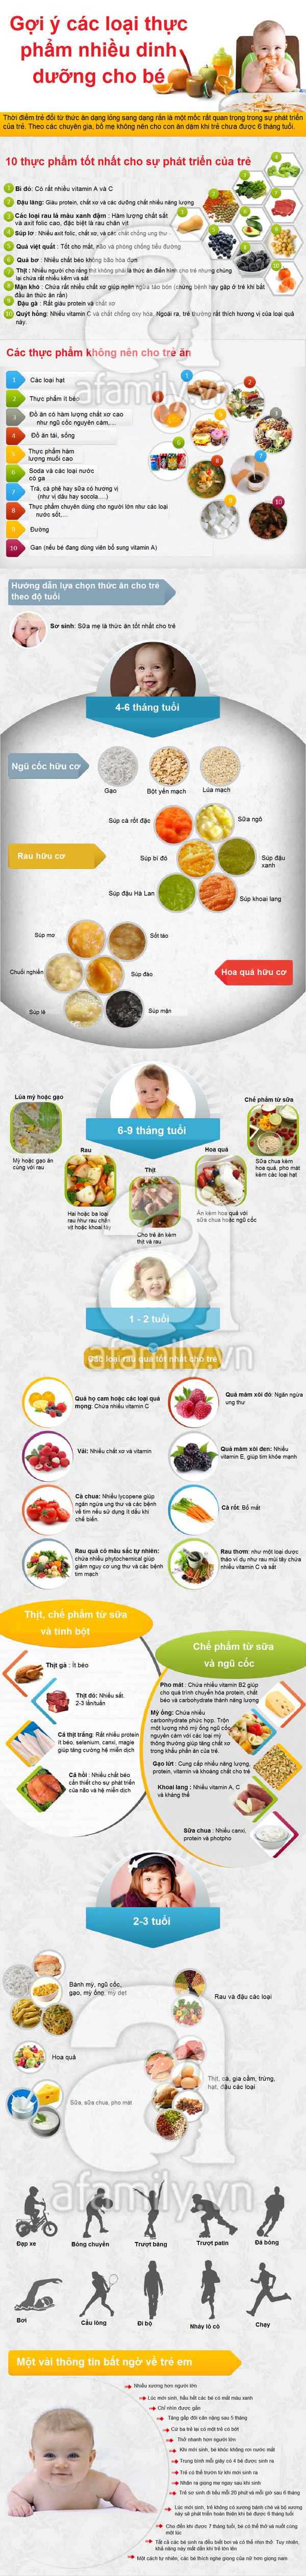 Gợi ý các loại thực phẩm nhiều dinh dưỡng cho bé